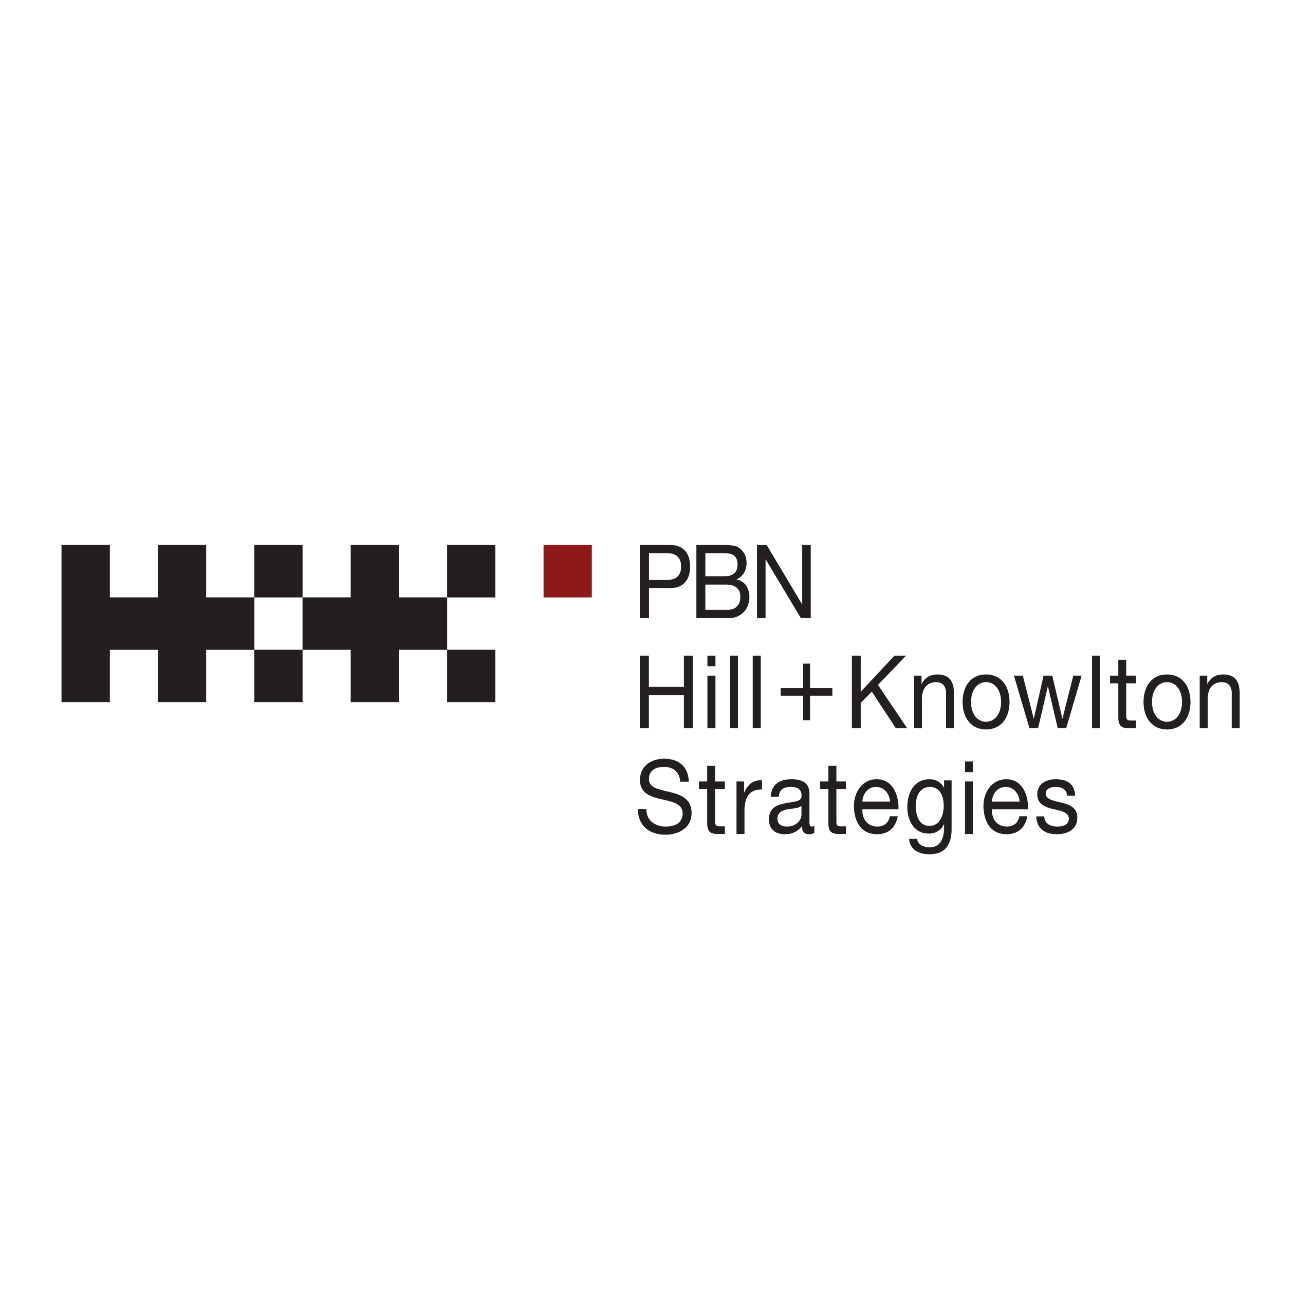 PBN Hill & Knowlton Strategies